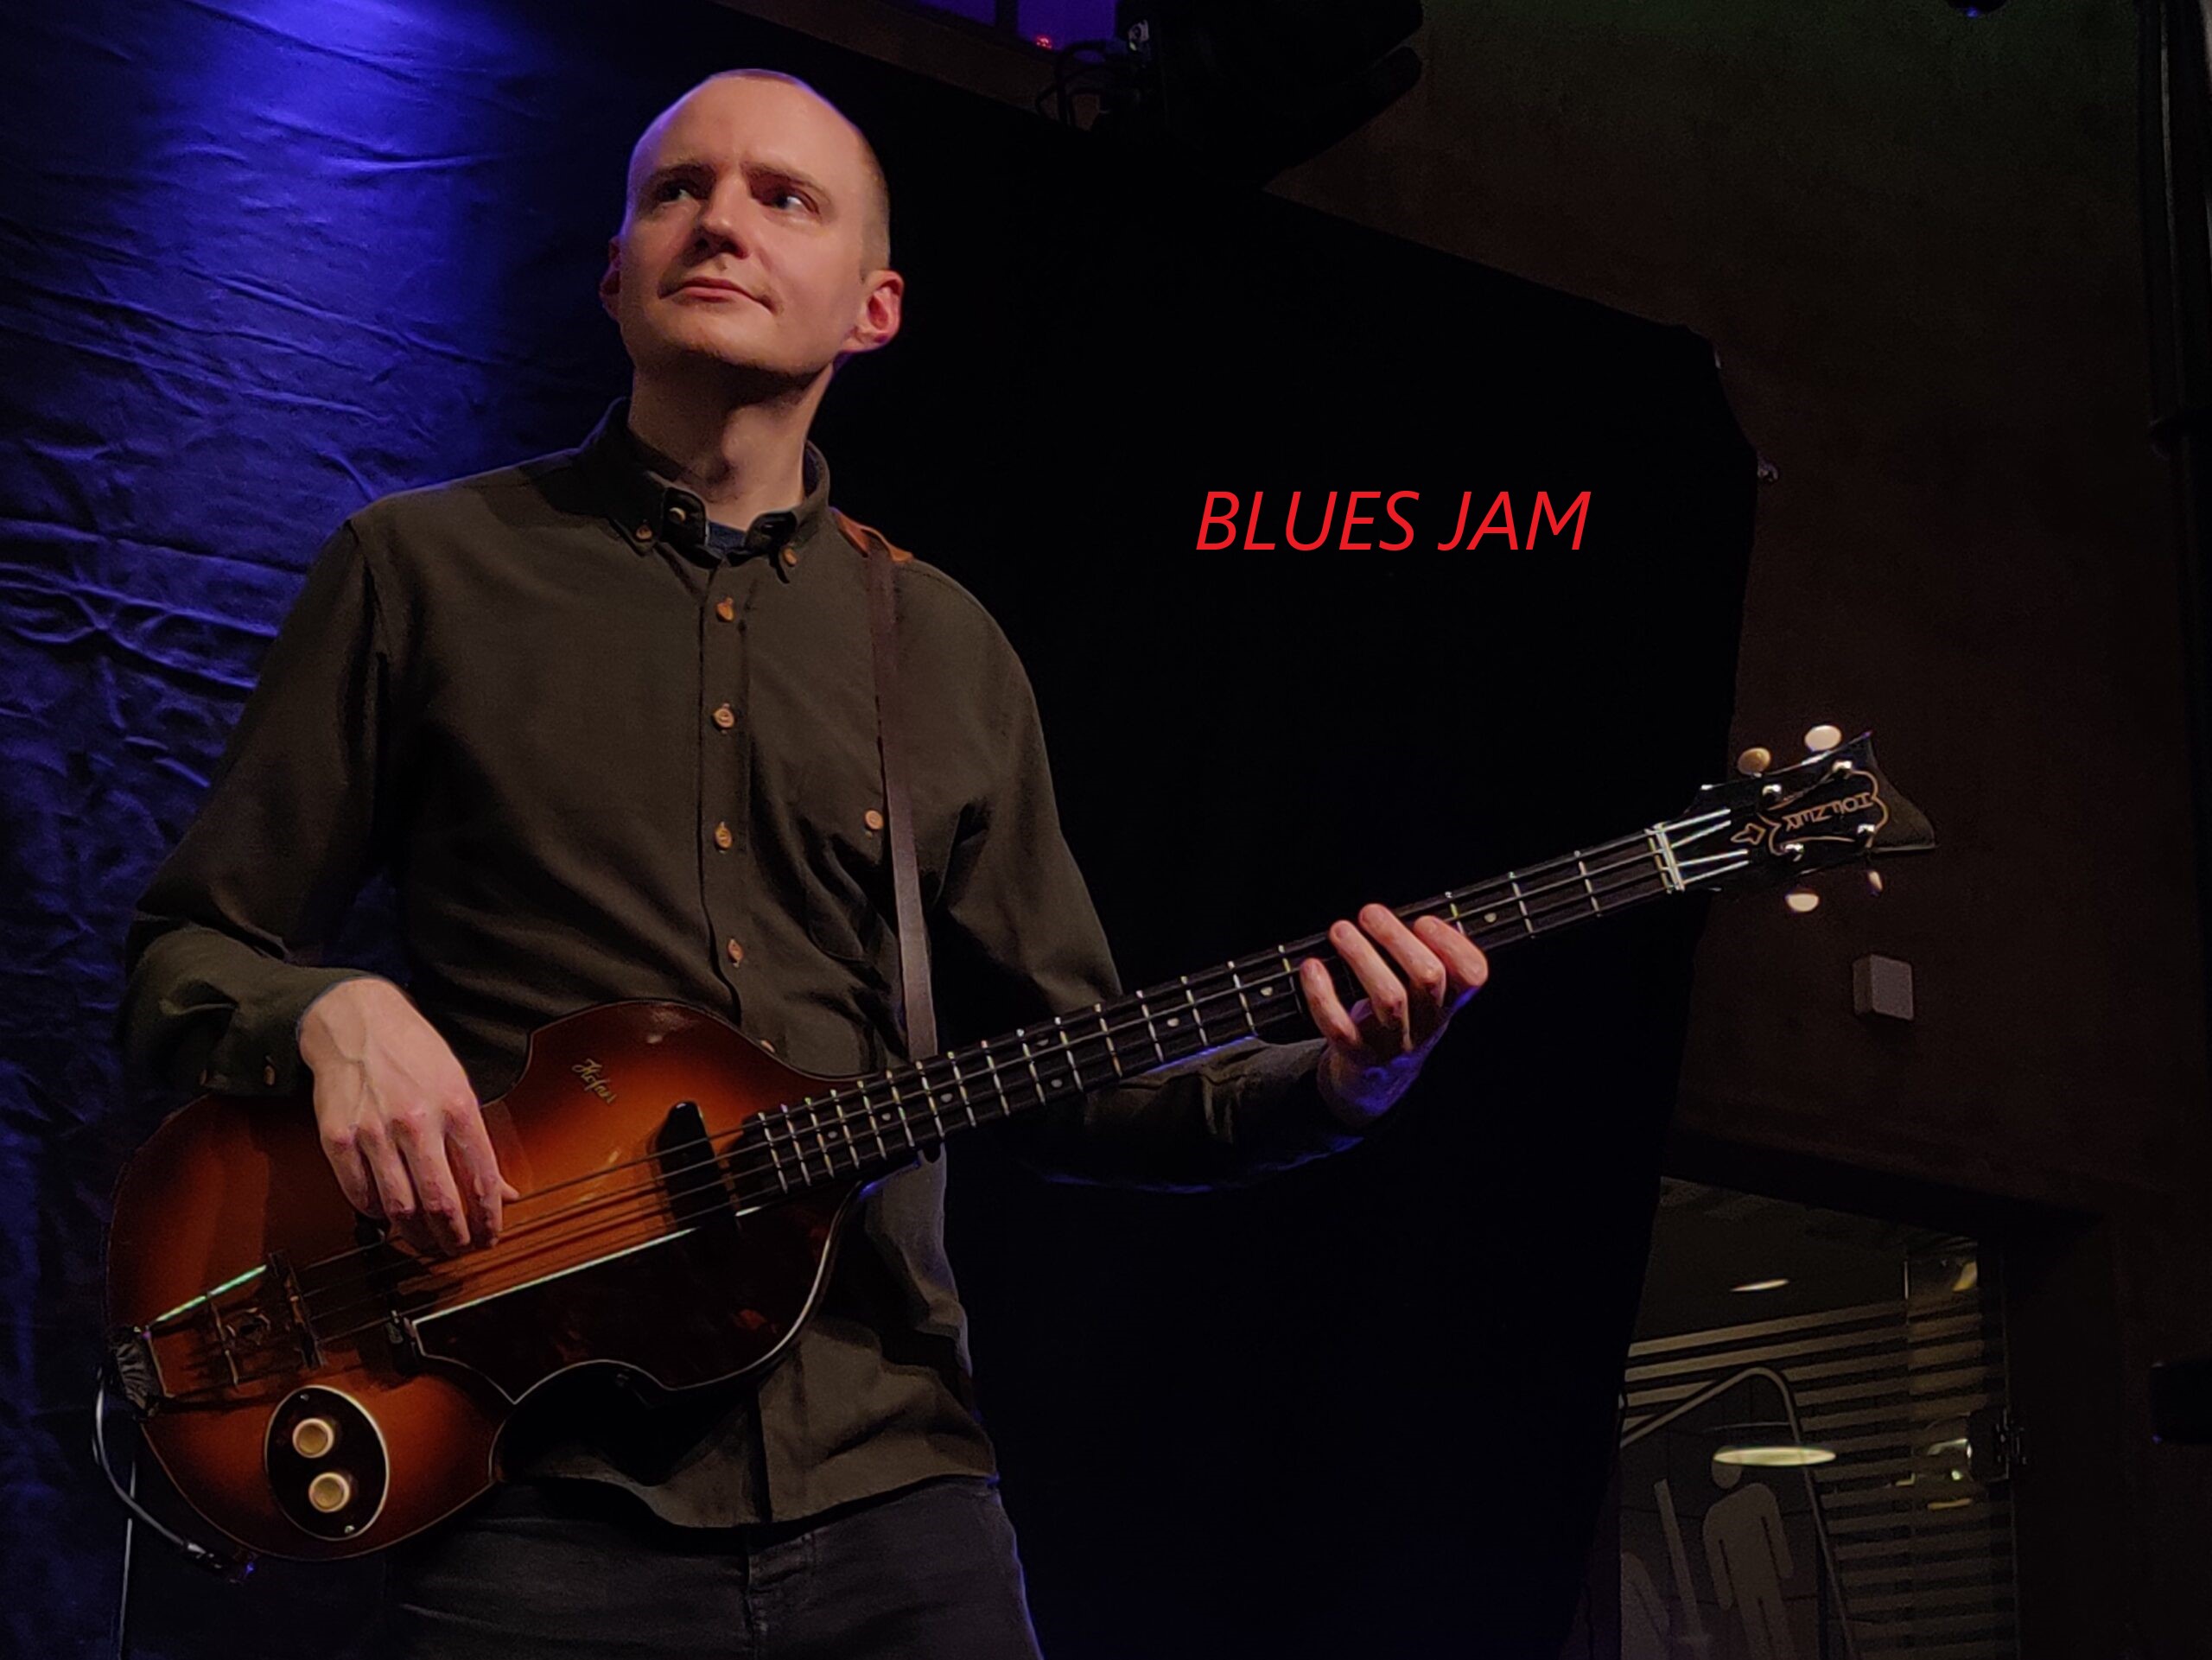 Blues Jam ved 
Laust Krudtmejer.
Feat. Jake Green og Carsten Milner
